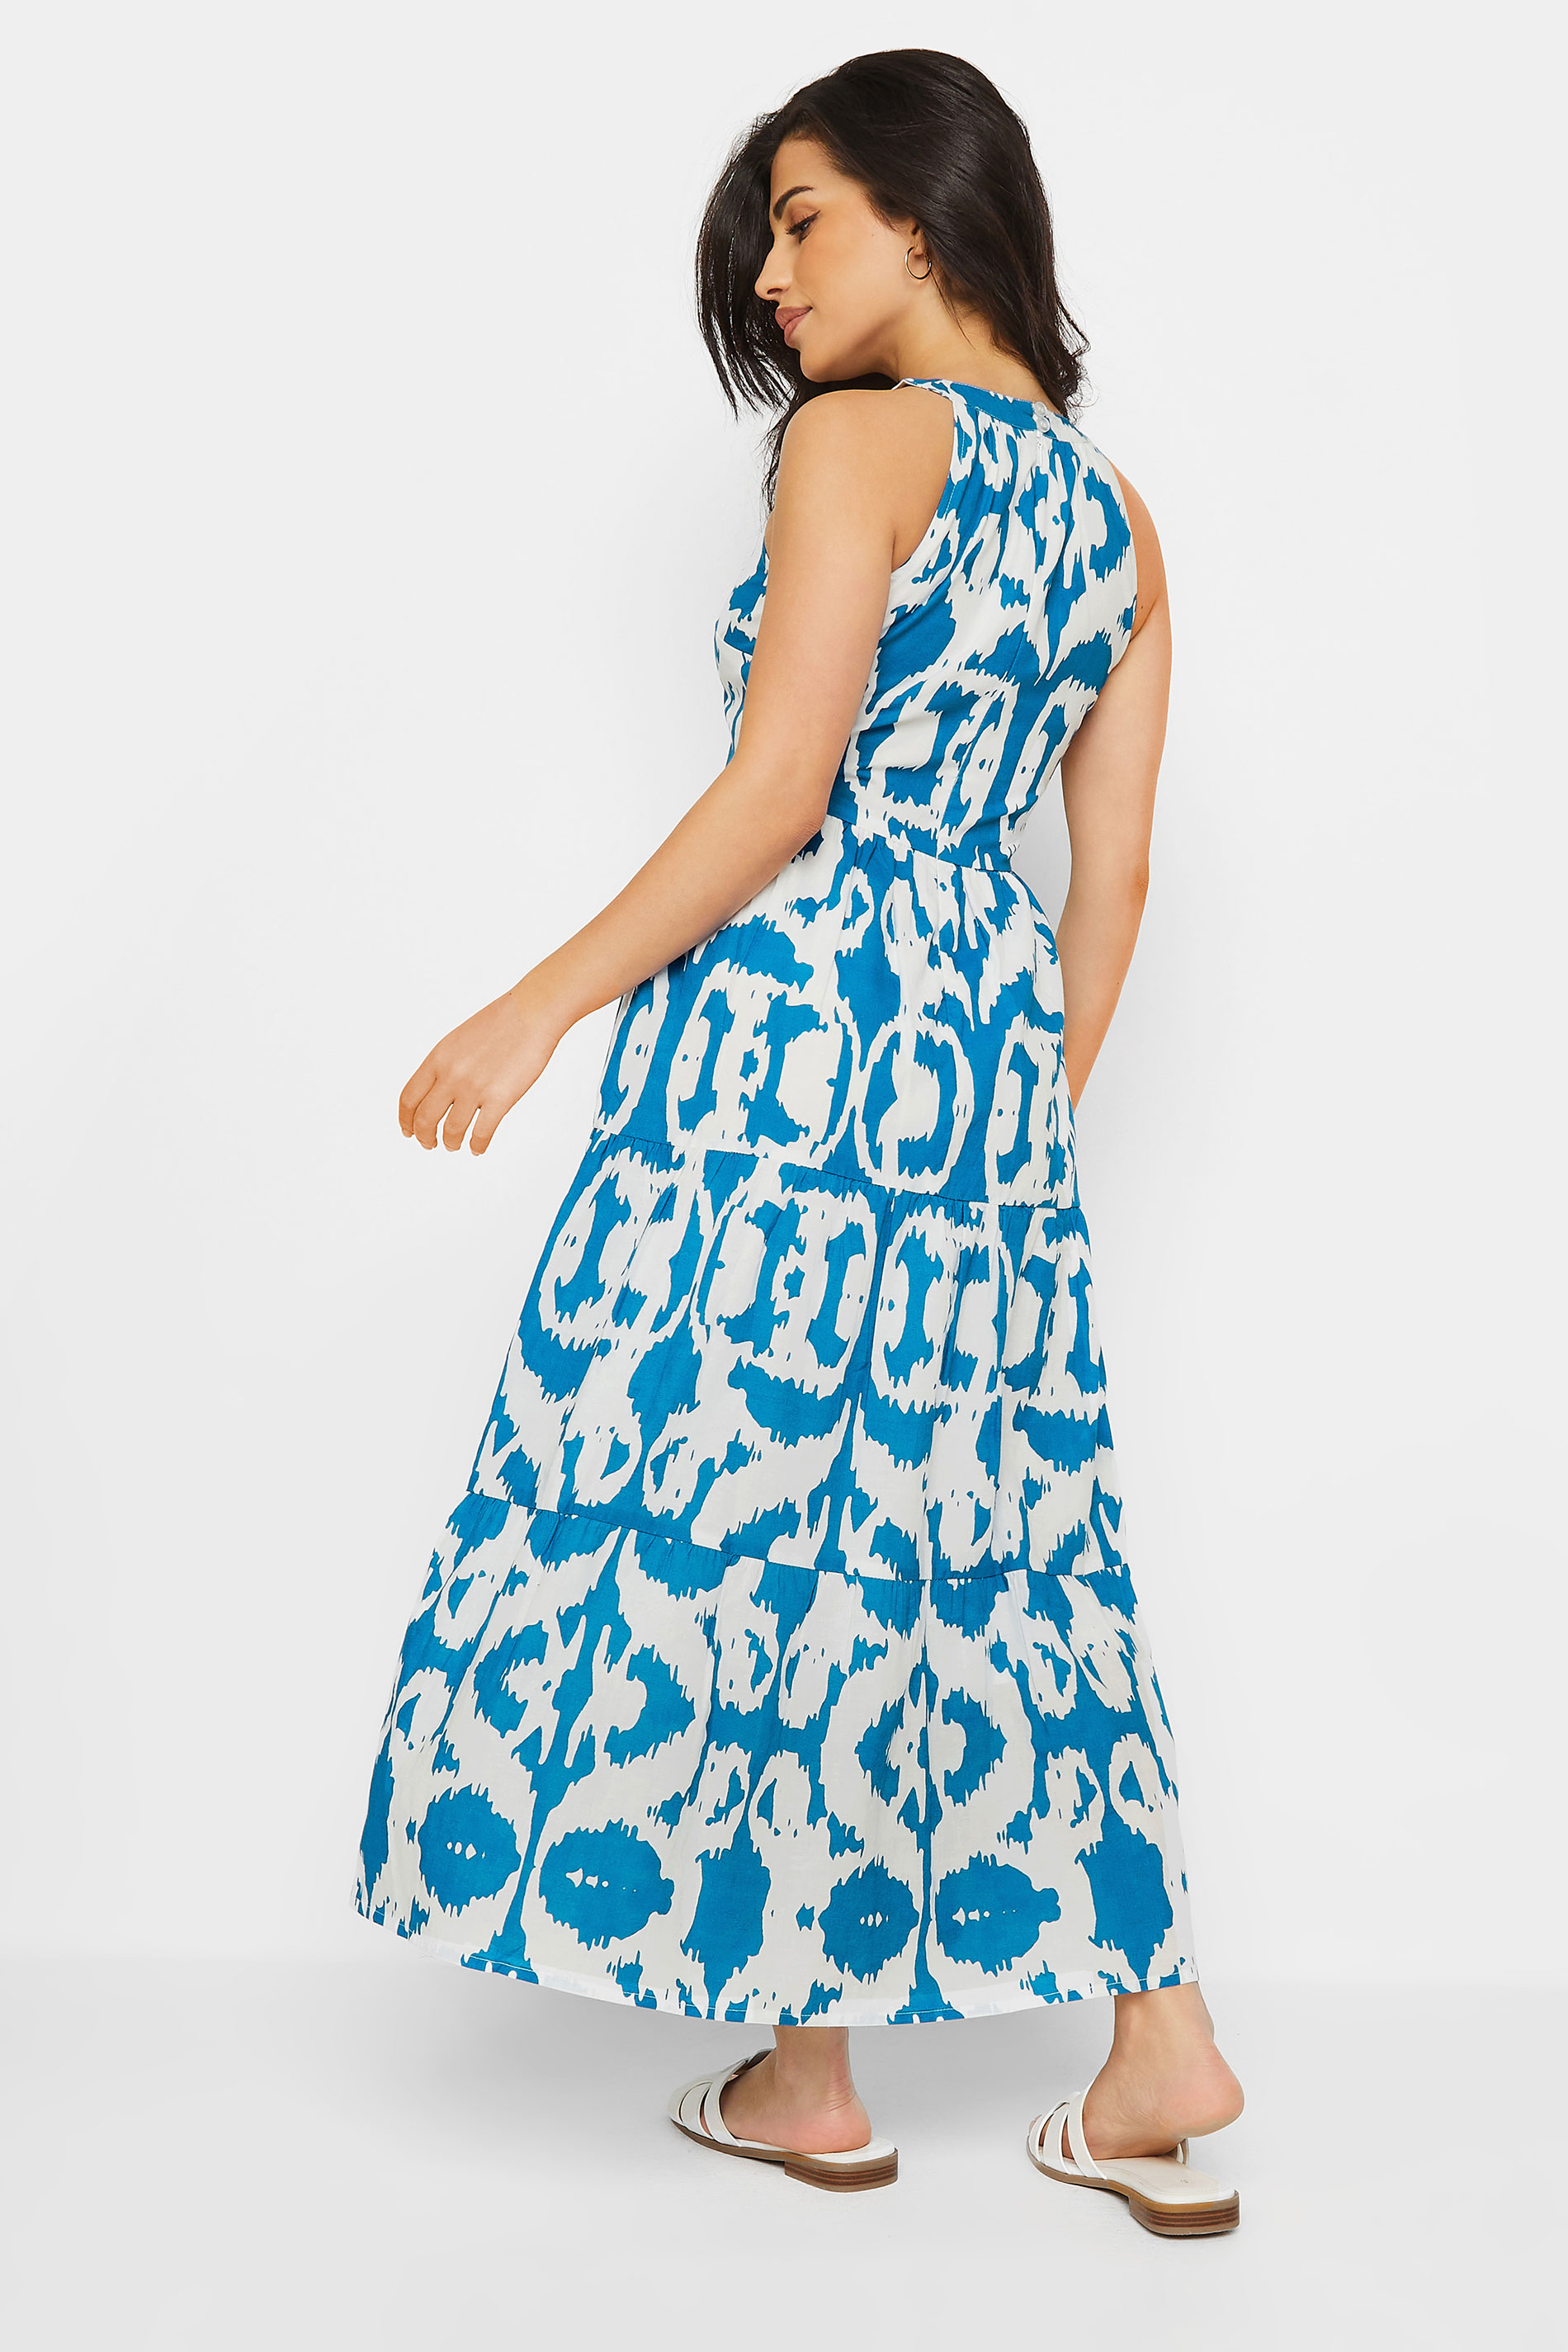 PixieGirl Petite Women's Blue & White Ikat Print Tiered Maxi Dress | PixieGirl 3